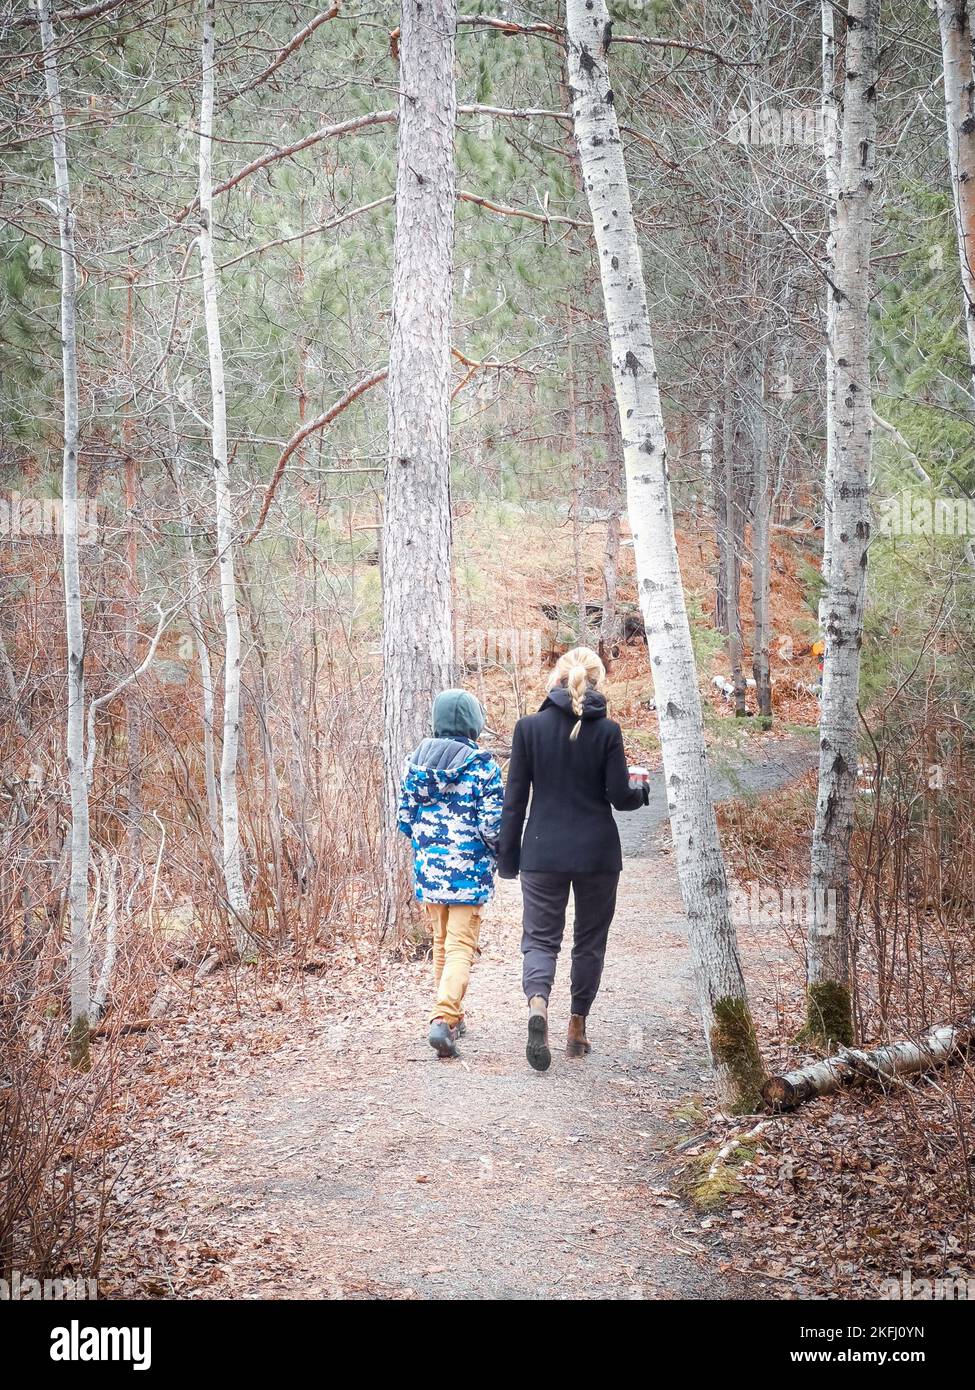 Rückansicht der kaukasischen Mutter und Sohn, die auf unbefestigten Straßen inmitten von Bäumen wandern, während sie ihren Urlaub im Wald genießen Stockfoto